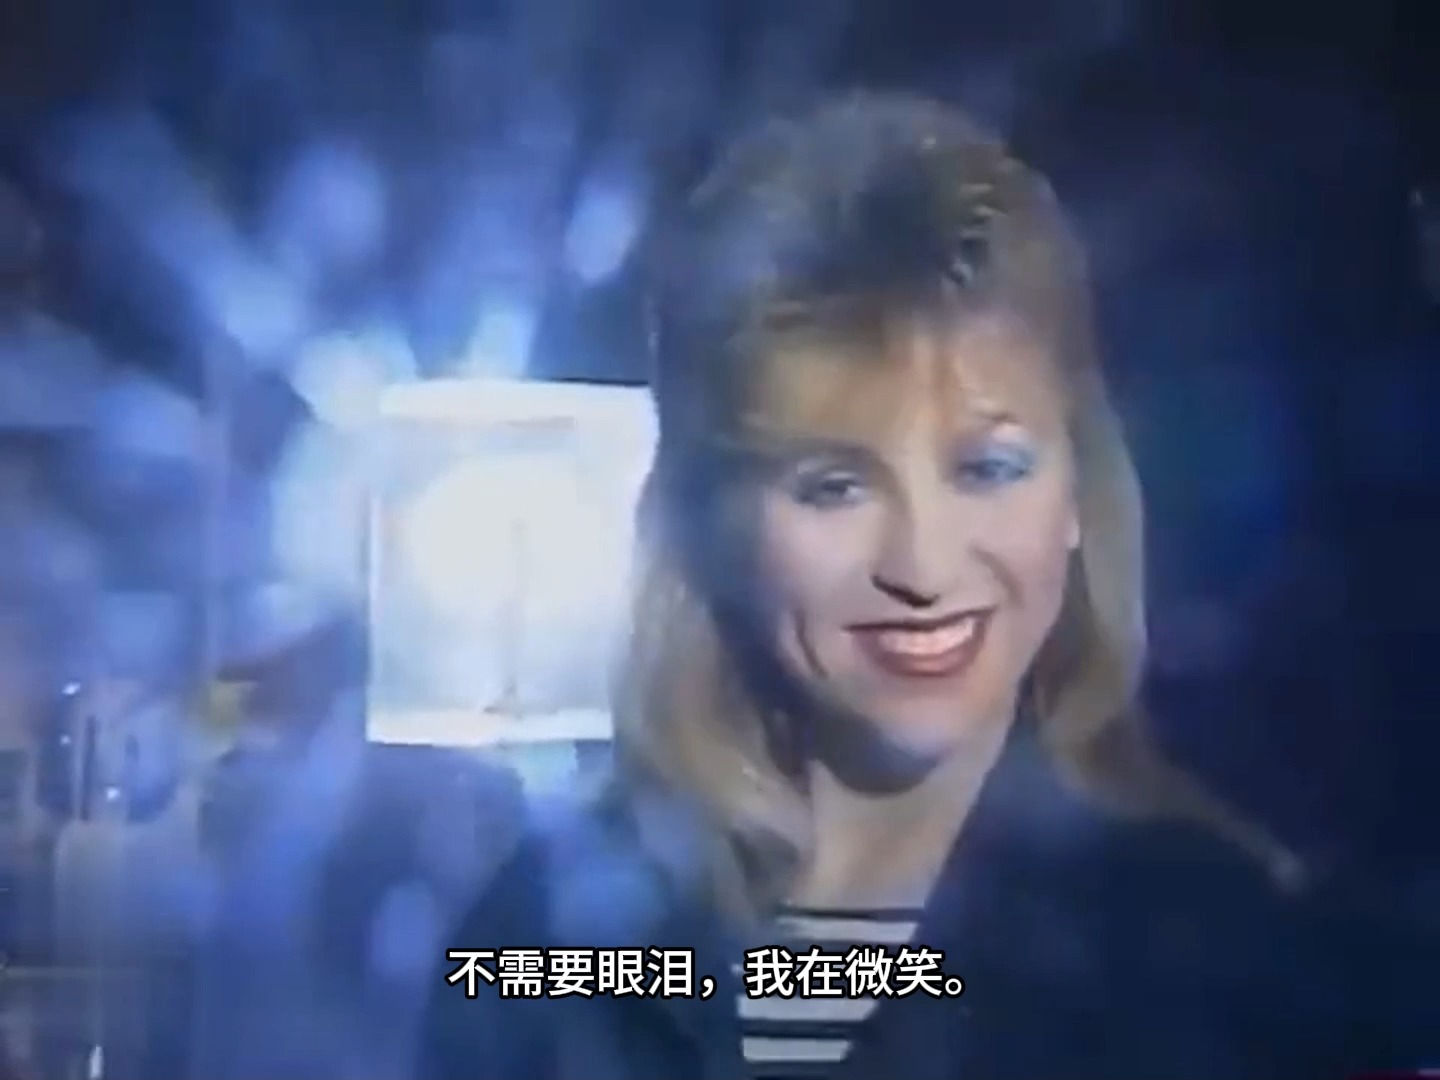 苏联电视台。 1988年晨间新闻节目  瓦伦蒂娜·莱科斯托波娃“我在微笑”